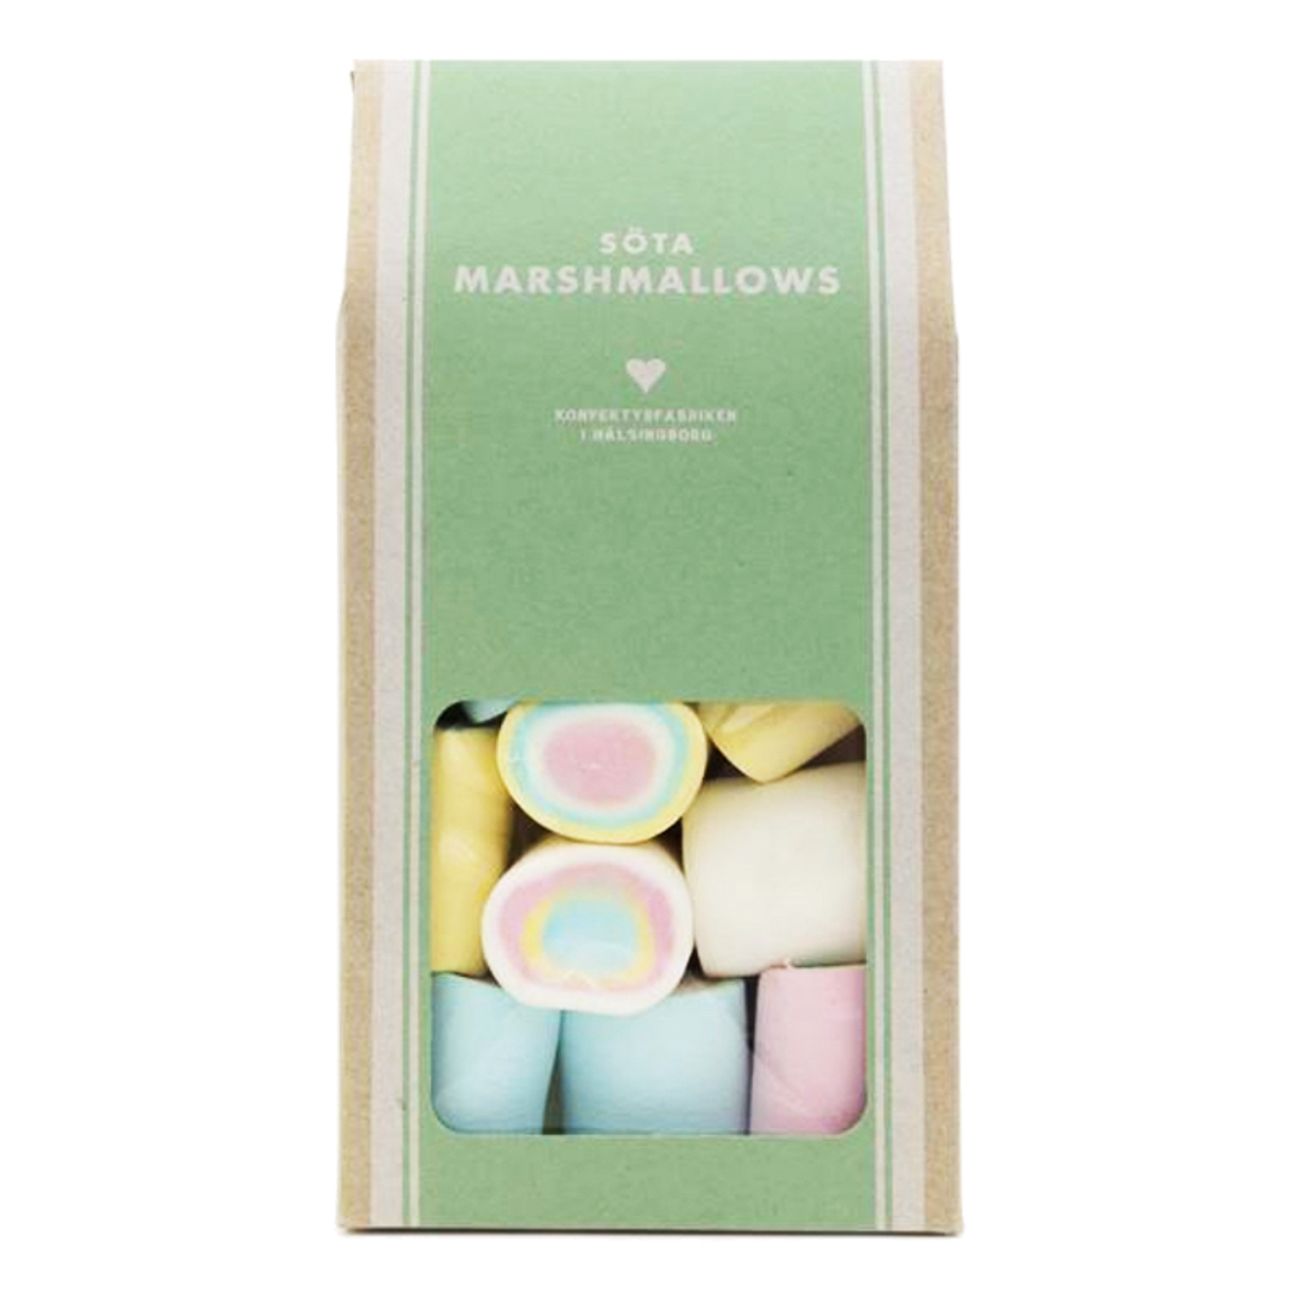 sota-marshmallows-74734-1